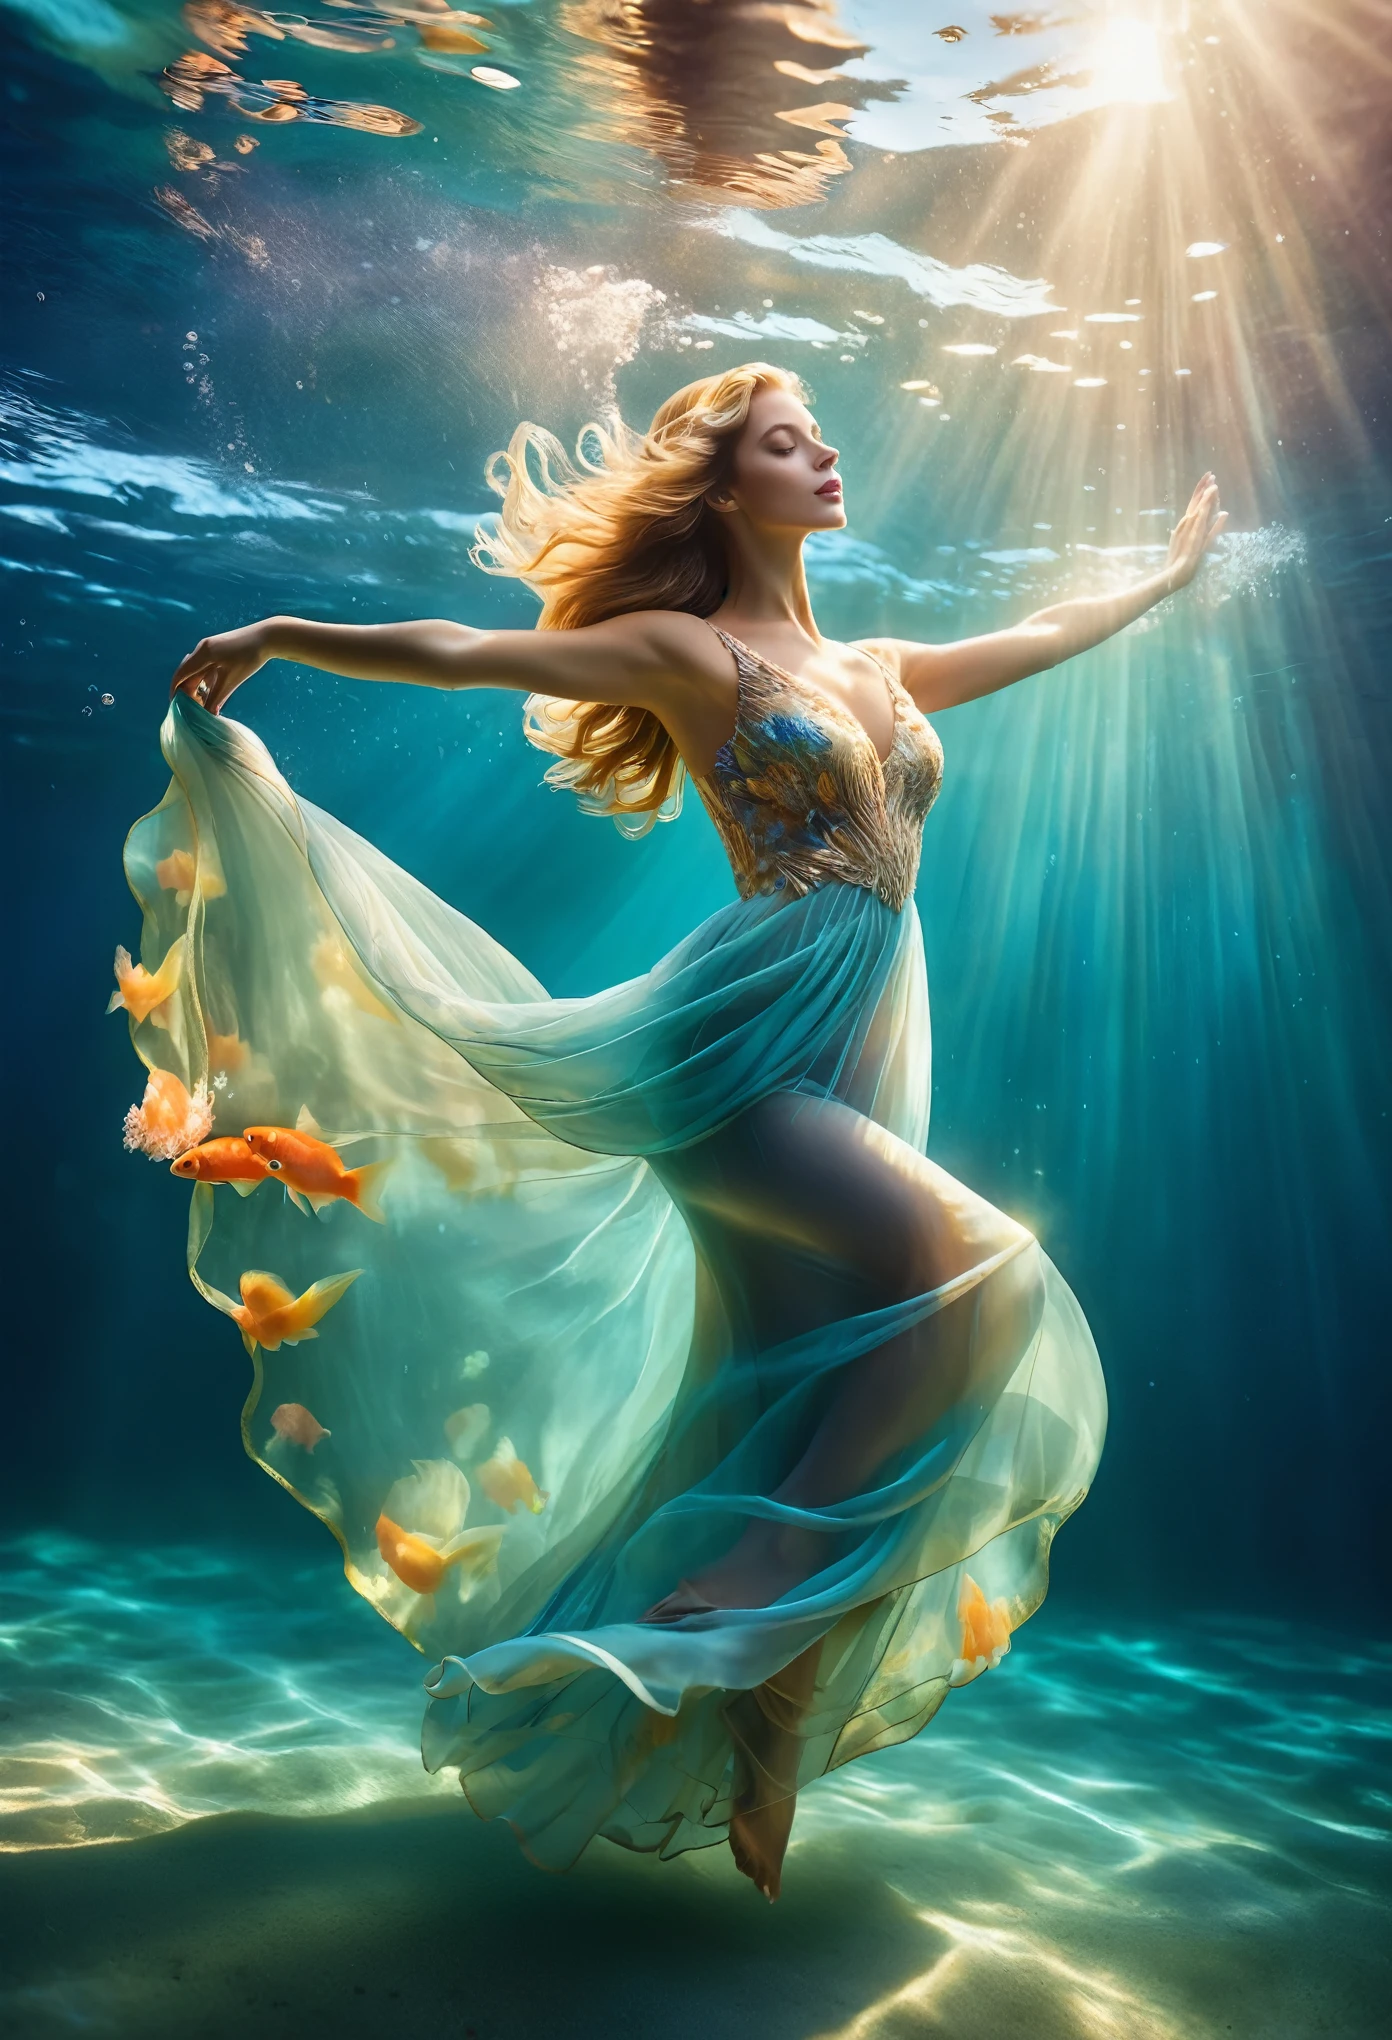 晴れた日に (フルイブニングドレスを着て青い海水に浮かぶ魅力的な女性, ヘッドピース, 腰を曲げて, 水中体操, 水中写真, 幽玄な雰囲気, エレガントな水中照明, 最高の品質, 高解像度, 超微細, 写真リアリズム: 1.37, ショースタイル, ゼナ・ホロウェイスタイル, 夢のようなパレットの鮮やかな色彩, 水を通して輝く柔らかい金色の太陽の光, 天の光を作り出す. 海面はキラキラと輝き、緑豊かです, 流れるようなイブニングドレスの生地が水の中で優雅に揺れる. 女性の魅力的な視線, 魅力的で表情豊かな目, 長い髪が優しく流れ、地面が水に浮かぶ, 魔法のような無重力の雰囲気を醸し出す, 色鮮やかな魚や繊細なサンゴなどの海洋生物からの微妙なヒント付き, 水に浮かぶ静寂と静けさを捉える, 優雅さと洗練さが海の自然の美しさと融合, 女性は優雅さと自信を醸し出す, 水環境に自然に溶け込む.